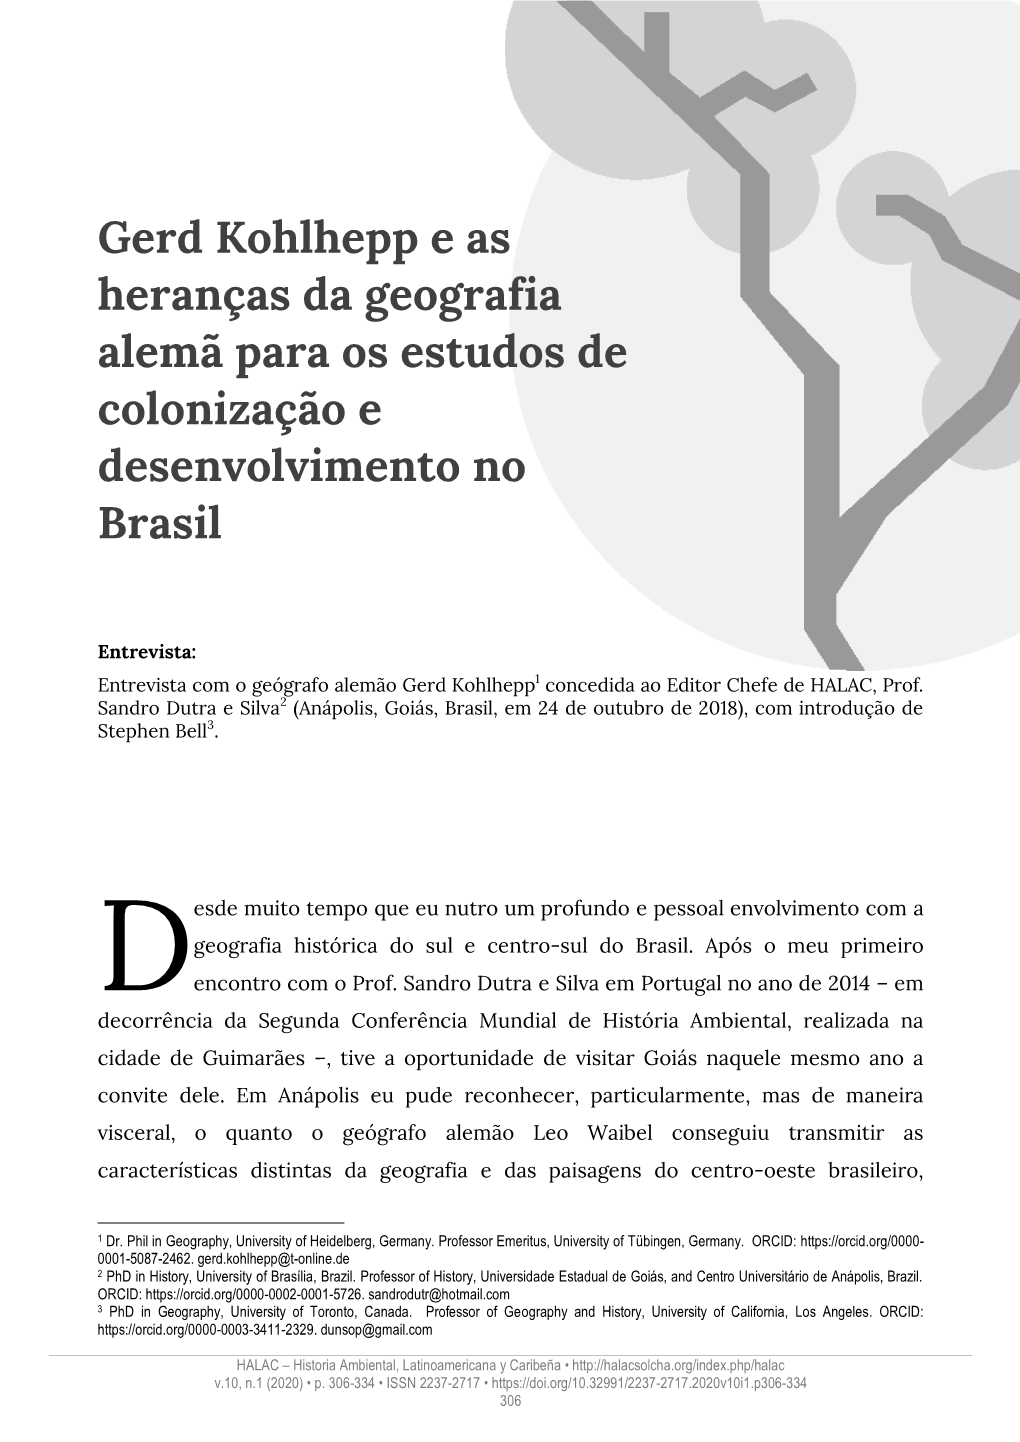 Gerd Kohlhepp E As Heranças Da Geografia Alemã Para Os Estudos De Colonização E Desenvolvimento No Brasil